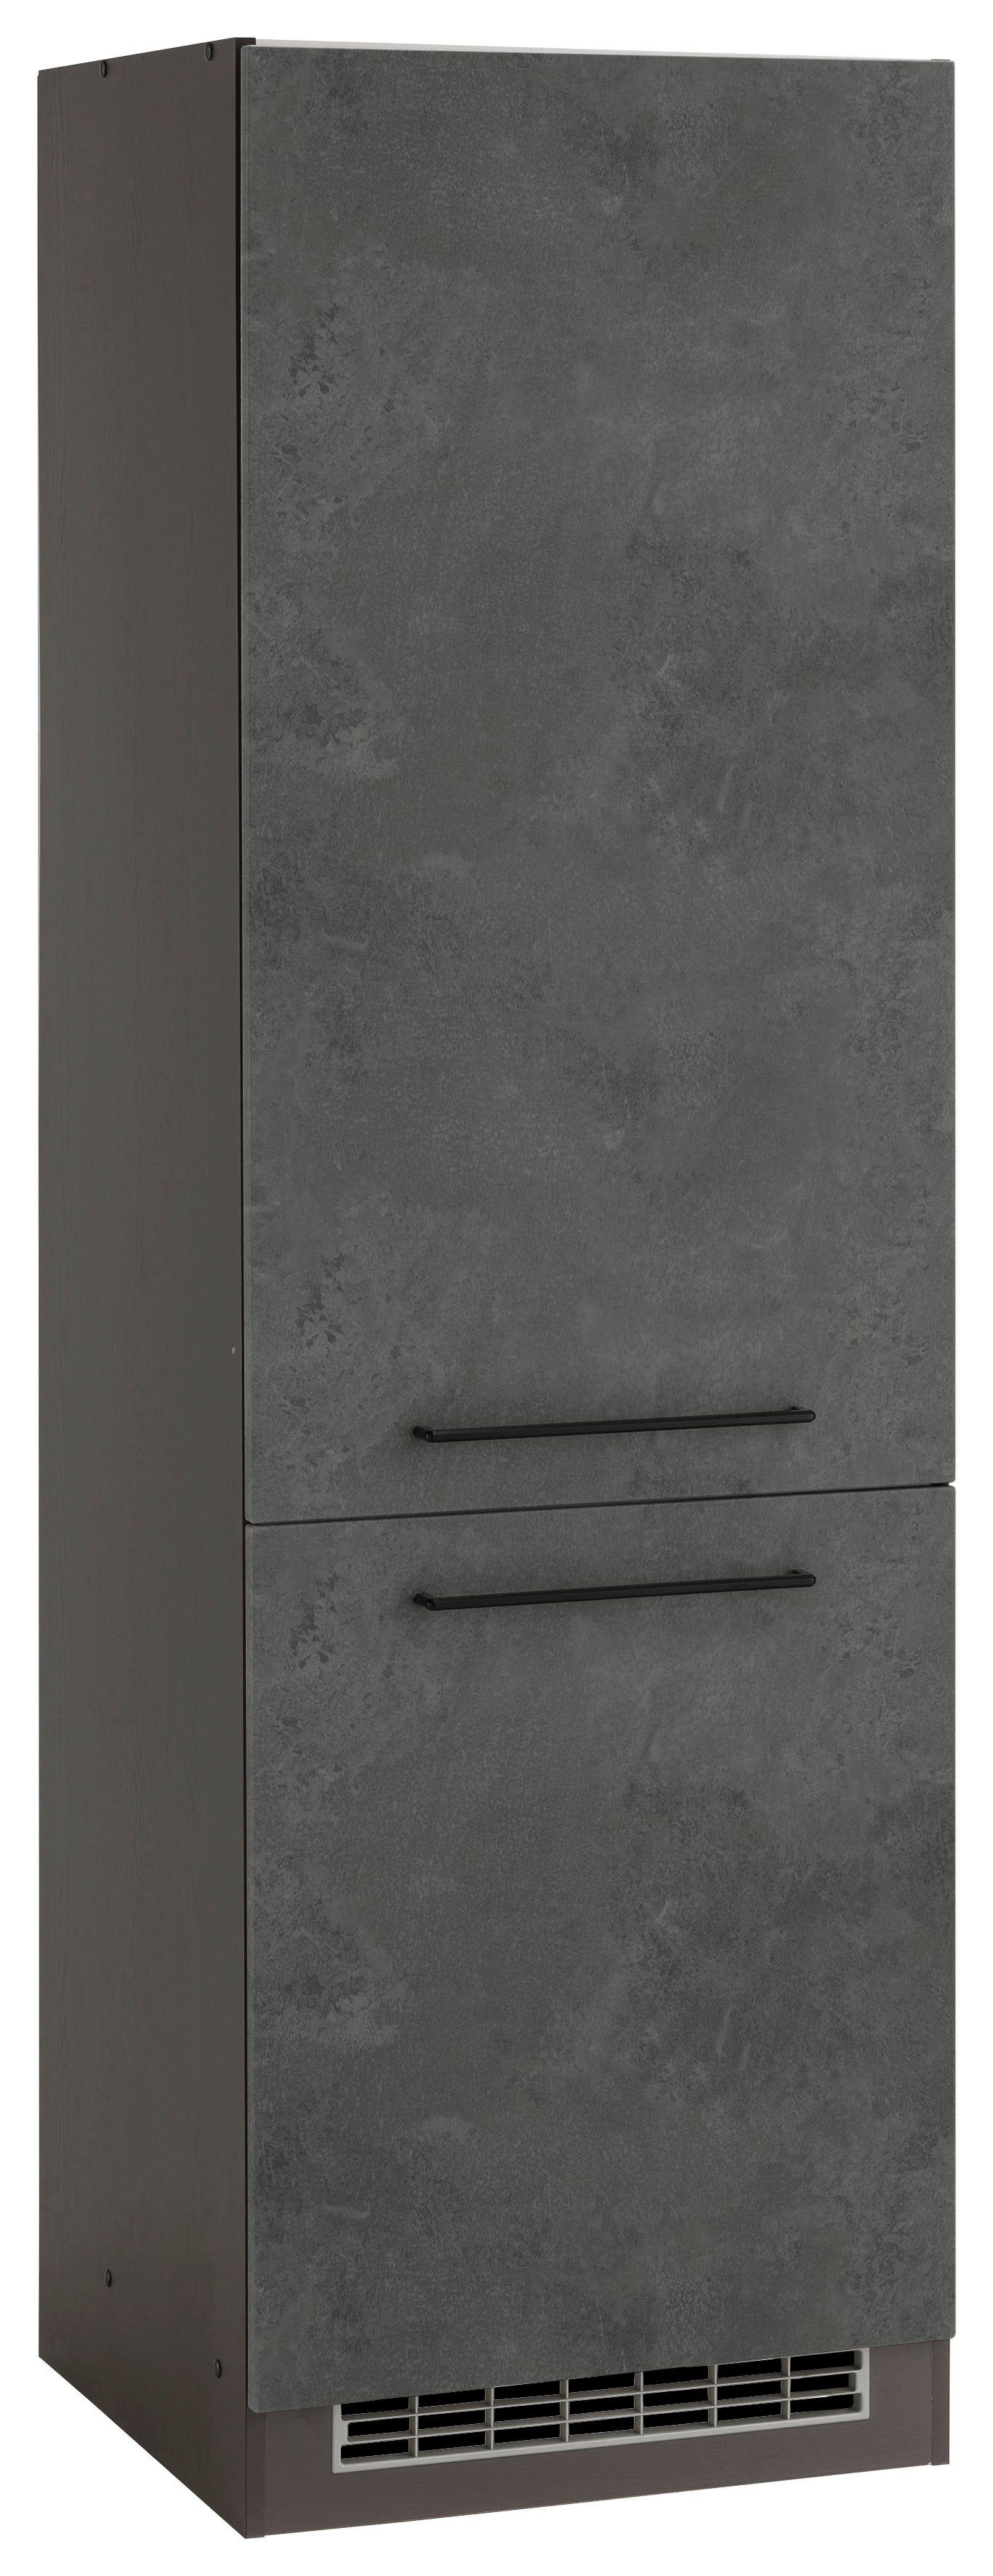 HELD MÖBEL Kühlumbauschrank Tulsa 60 cm breit, 200 cm hoch, 2 Türen, schwarzer Metallgriff, MDF Front betonfarben dunkel | grafit